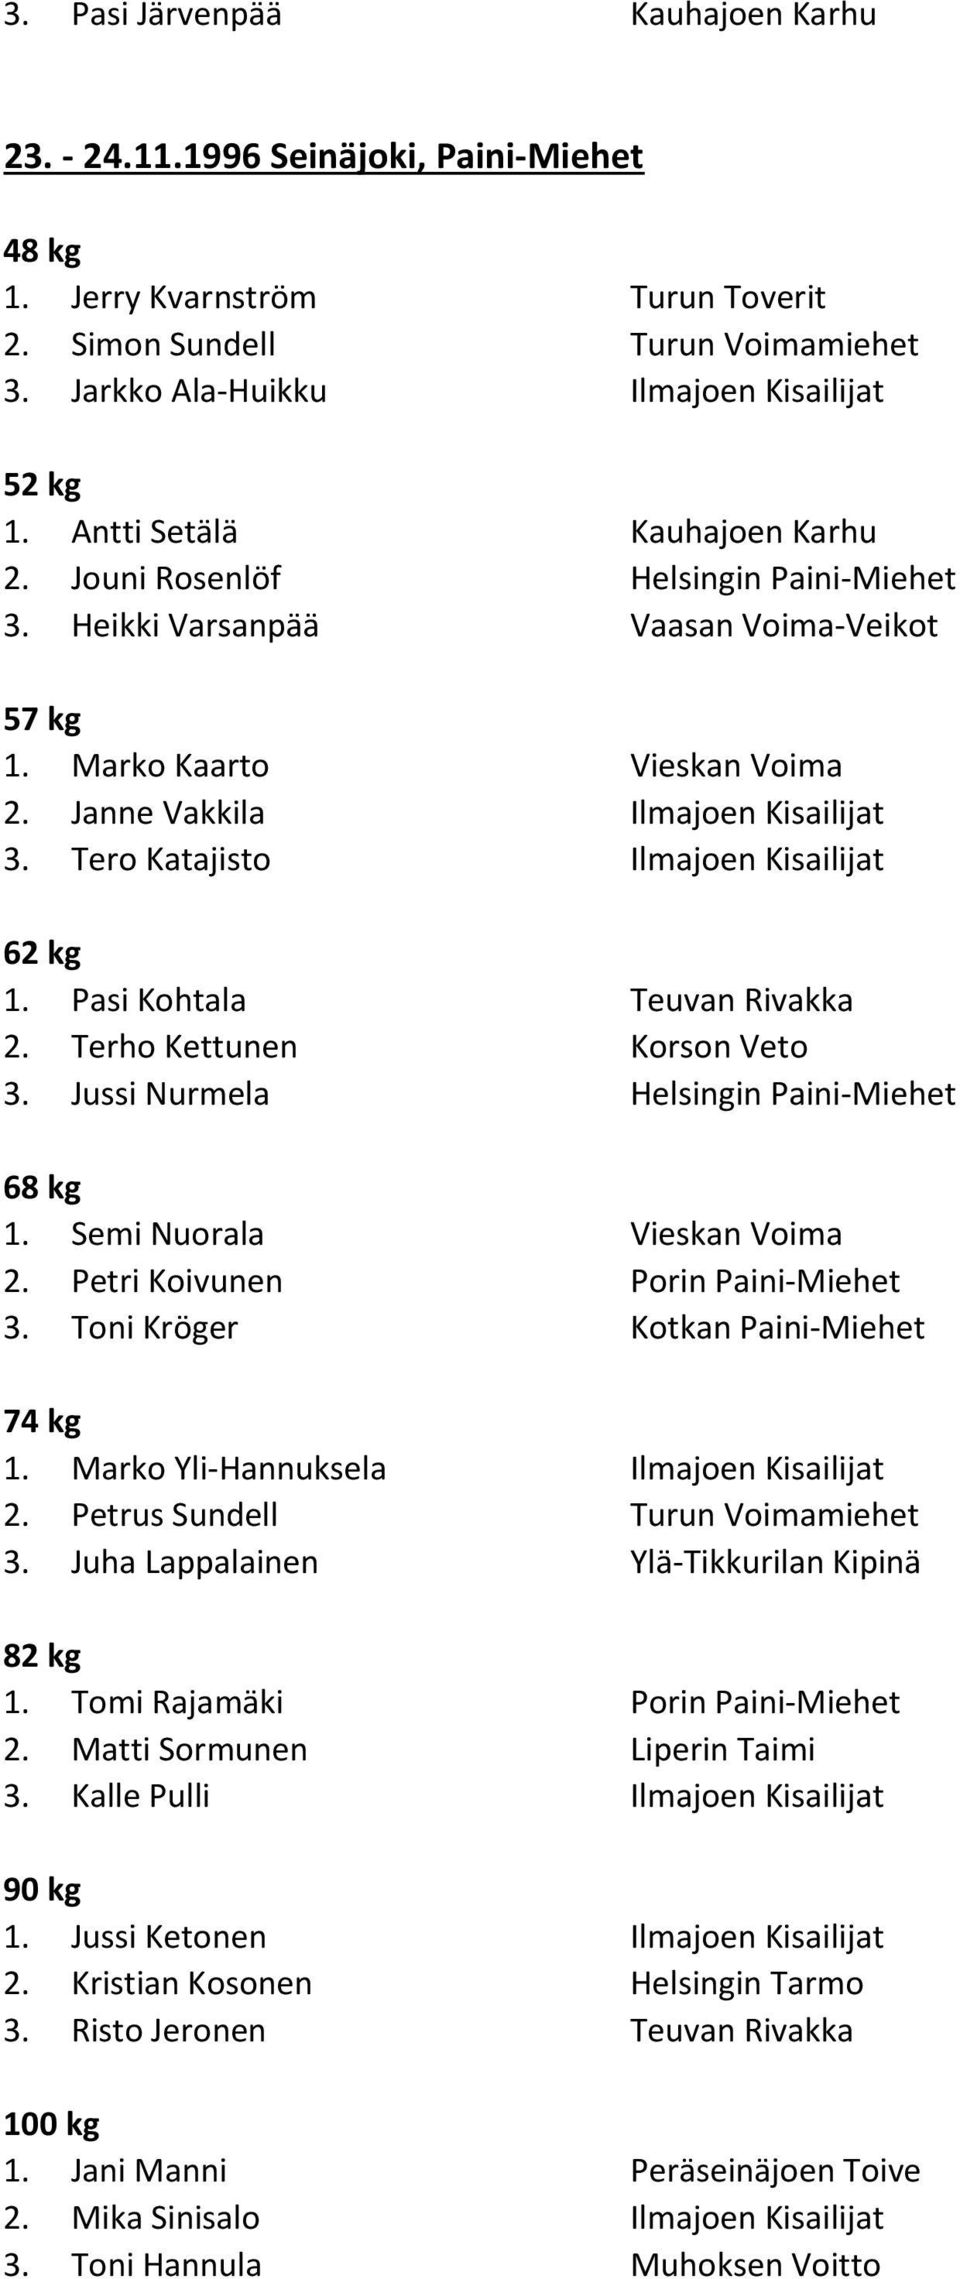 Jussi Nurmela Helsingin Paini-Miehet 68 kg 1. Semi Nuorala Vieskan Voima 2. Petri Koivunen Porin Paini-Miehet 3. Toni Kröger Kotkan Paini-Miehet 74 kg 1. Marko Yli-Hannuksela Ilmajoen Kisailijat 2.